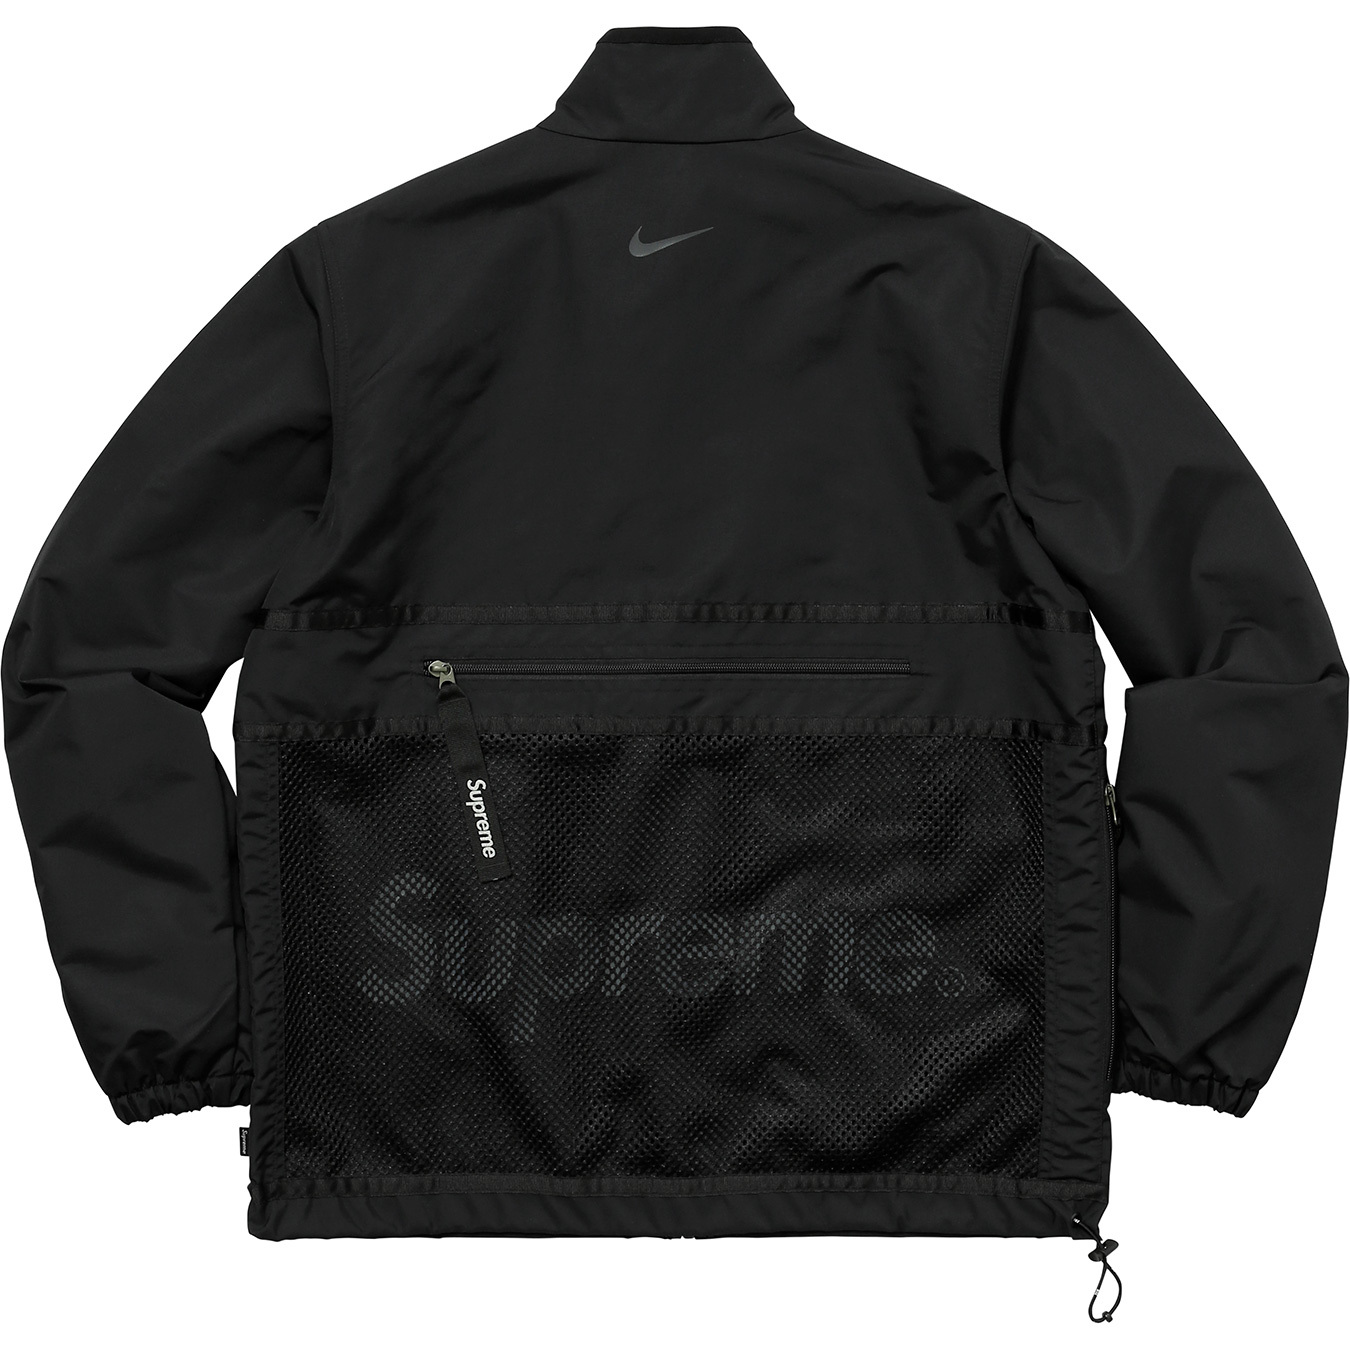 Supreme Nike Trail Running Jacket Black Men's - FW17 - US